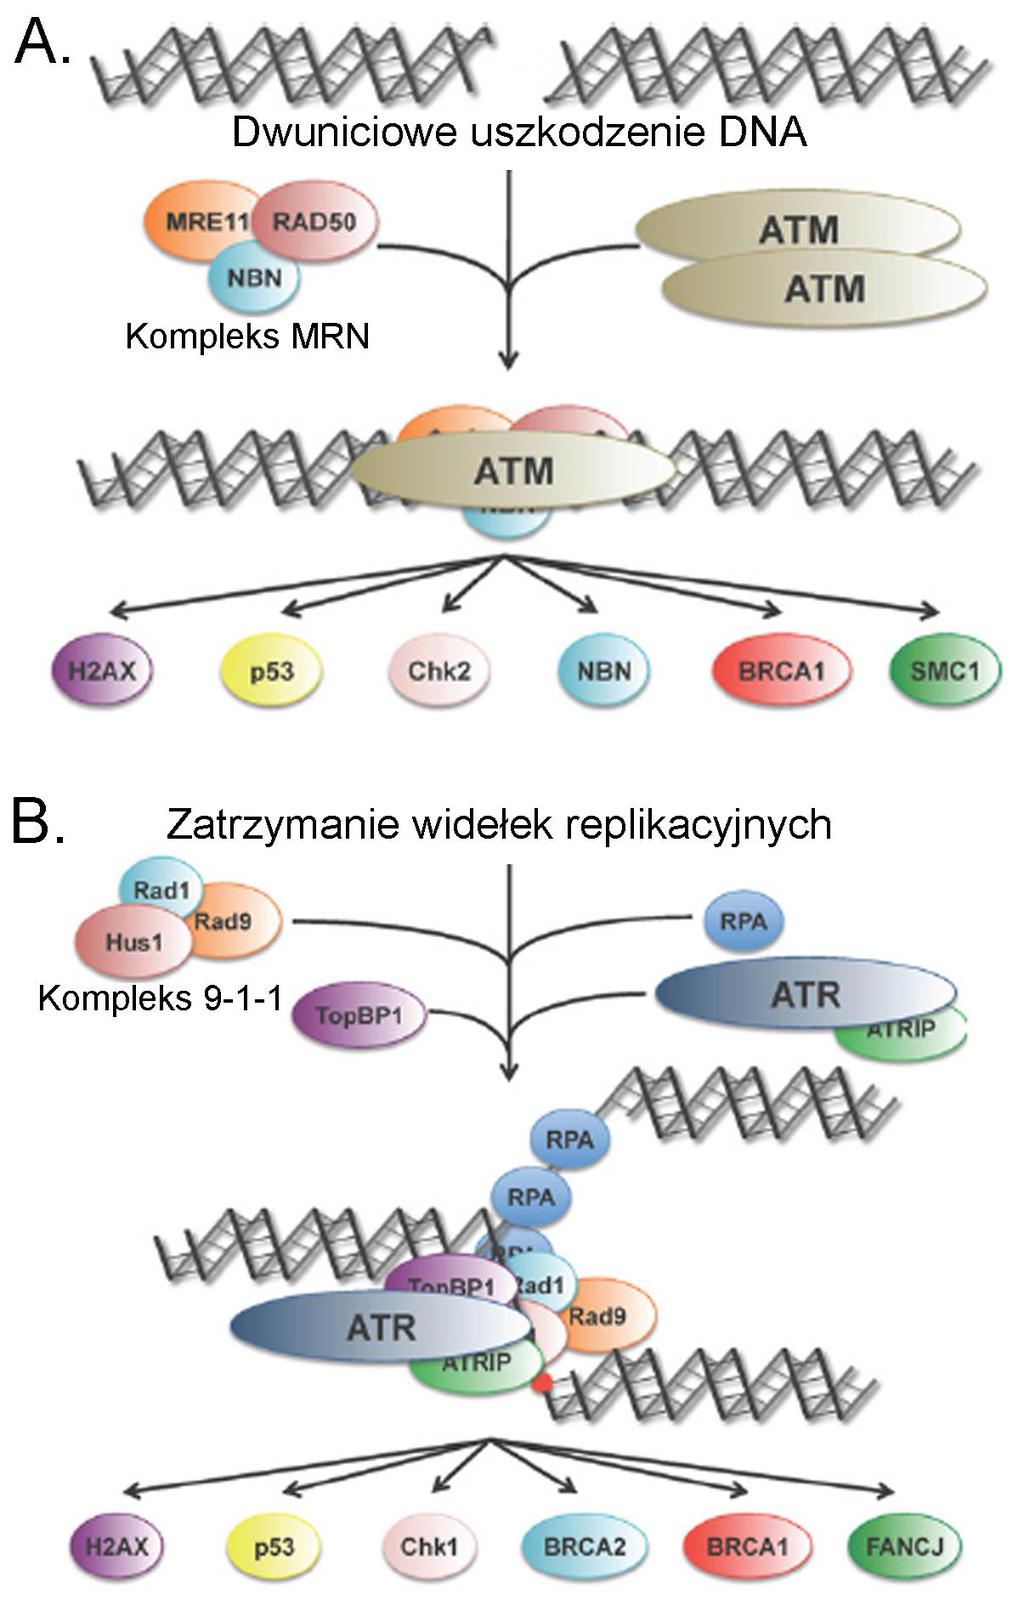 Wstęp Rys. 2.2. Aktywacja kinazy ATM i ATR w odpowiedzi na uszkodzenia DNA. (A) Kinaza ATM aktywowana jest przez kompleks MRN rozpoznający dwuniciowe uszkodzenia DNA.